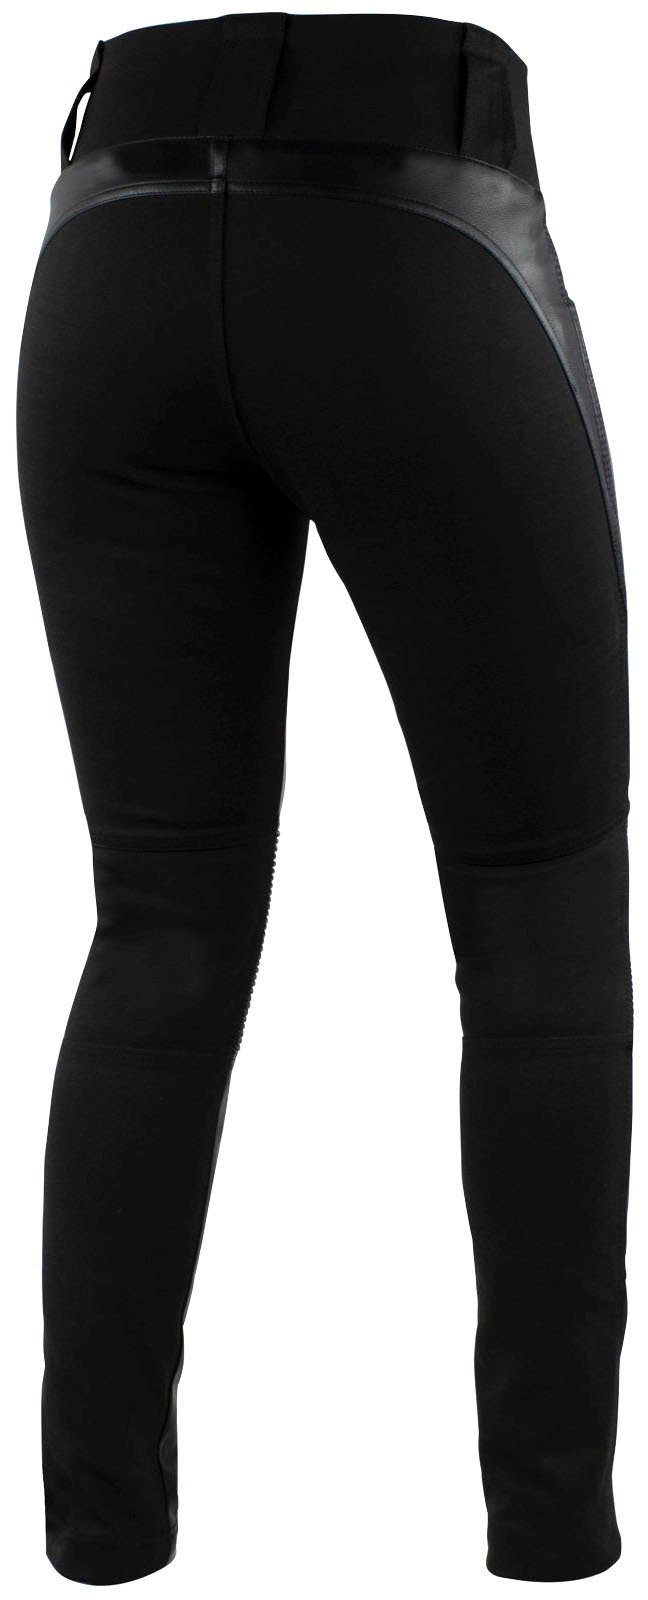 Falco Motorradhose Leder-Leggings für Damen, und Ergonomische im Stretcheinsätze Passform Kniebereich integrierte